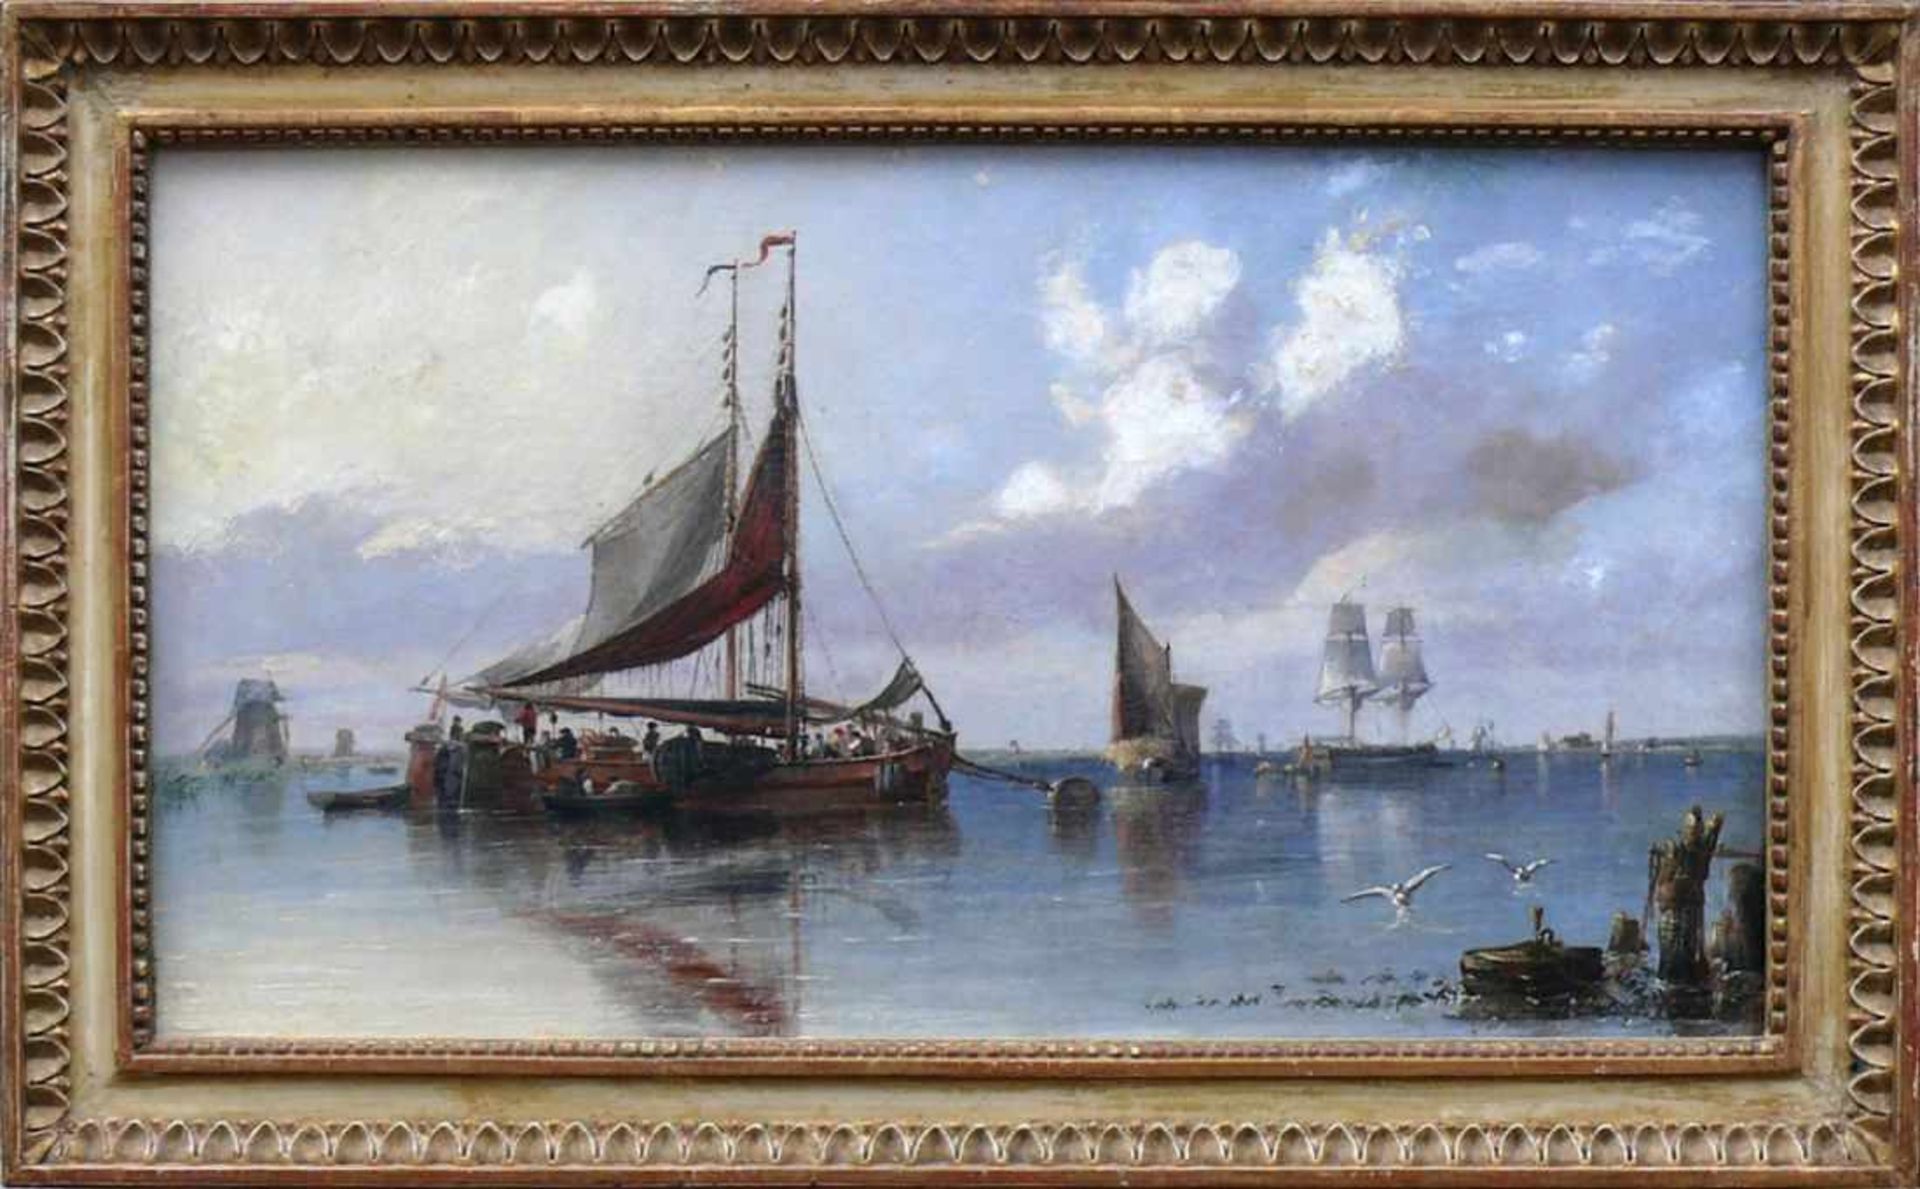 Hulk, Abraham (London 1813 - 1897) "Segel- und Fischerboote am Ufer"; lebhaftes Treiben und Handeln;